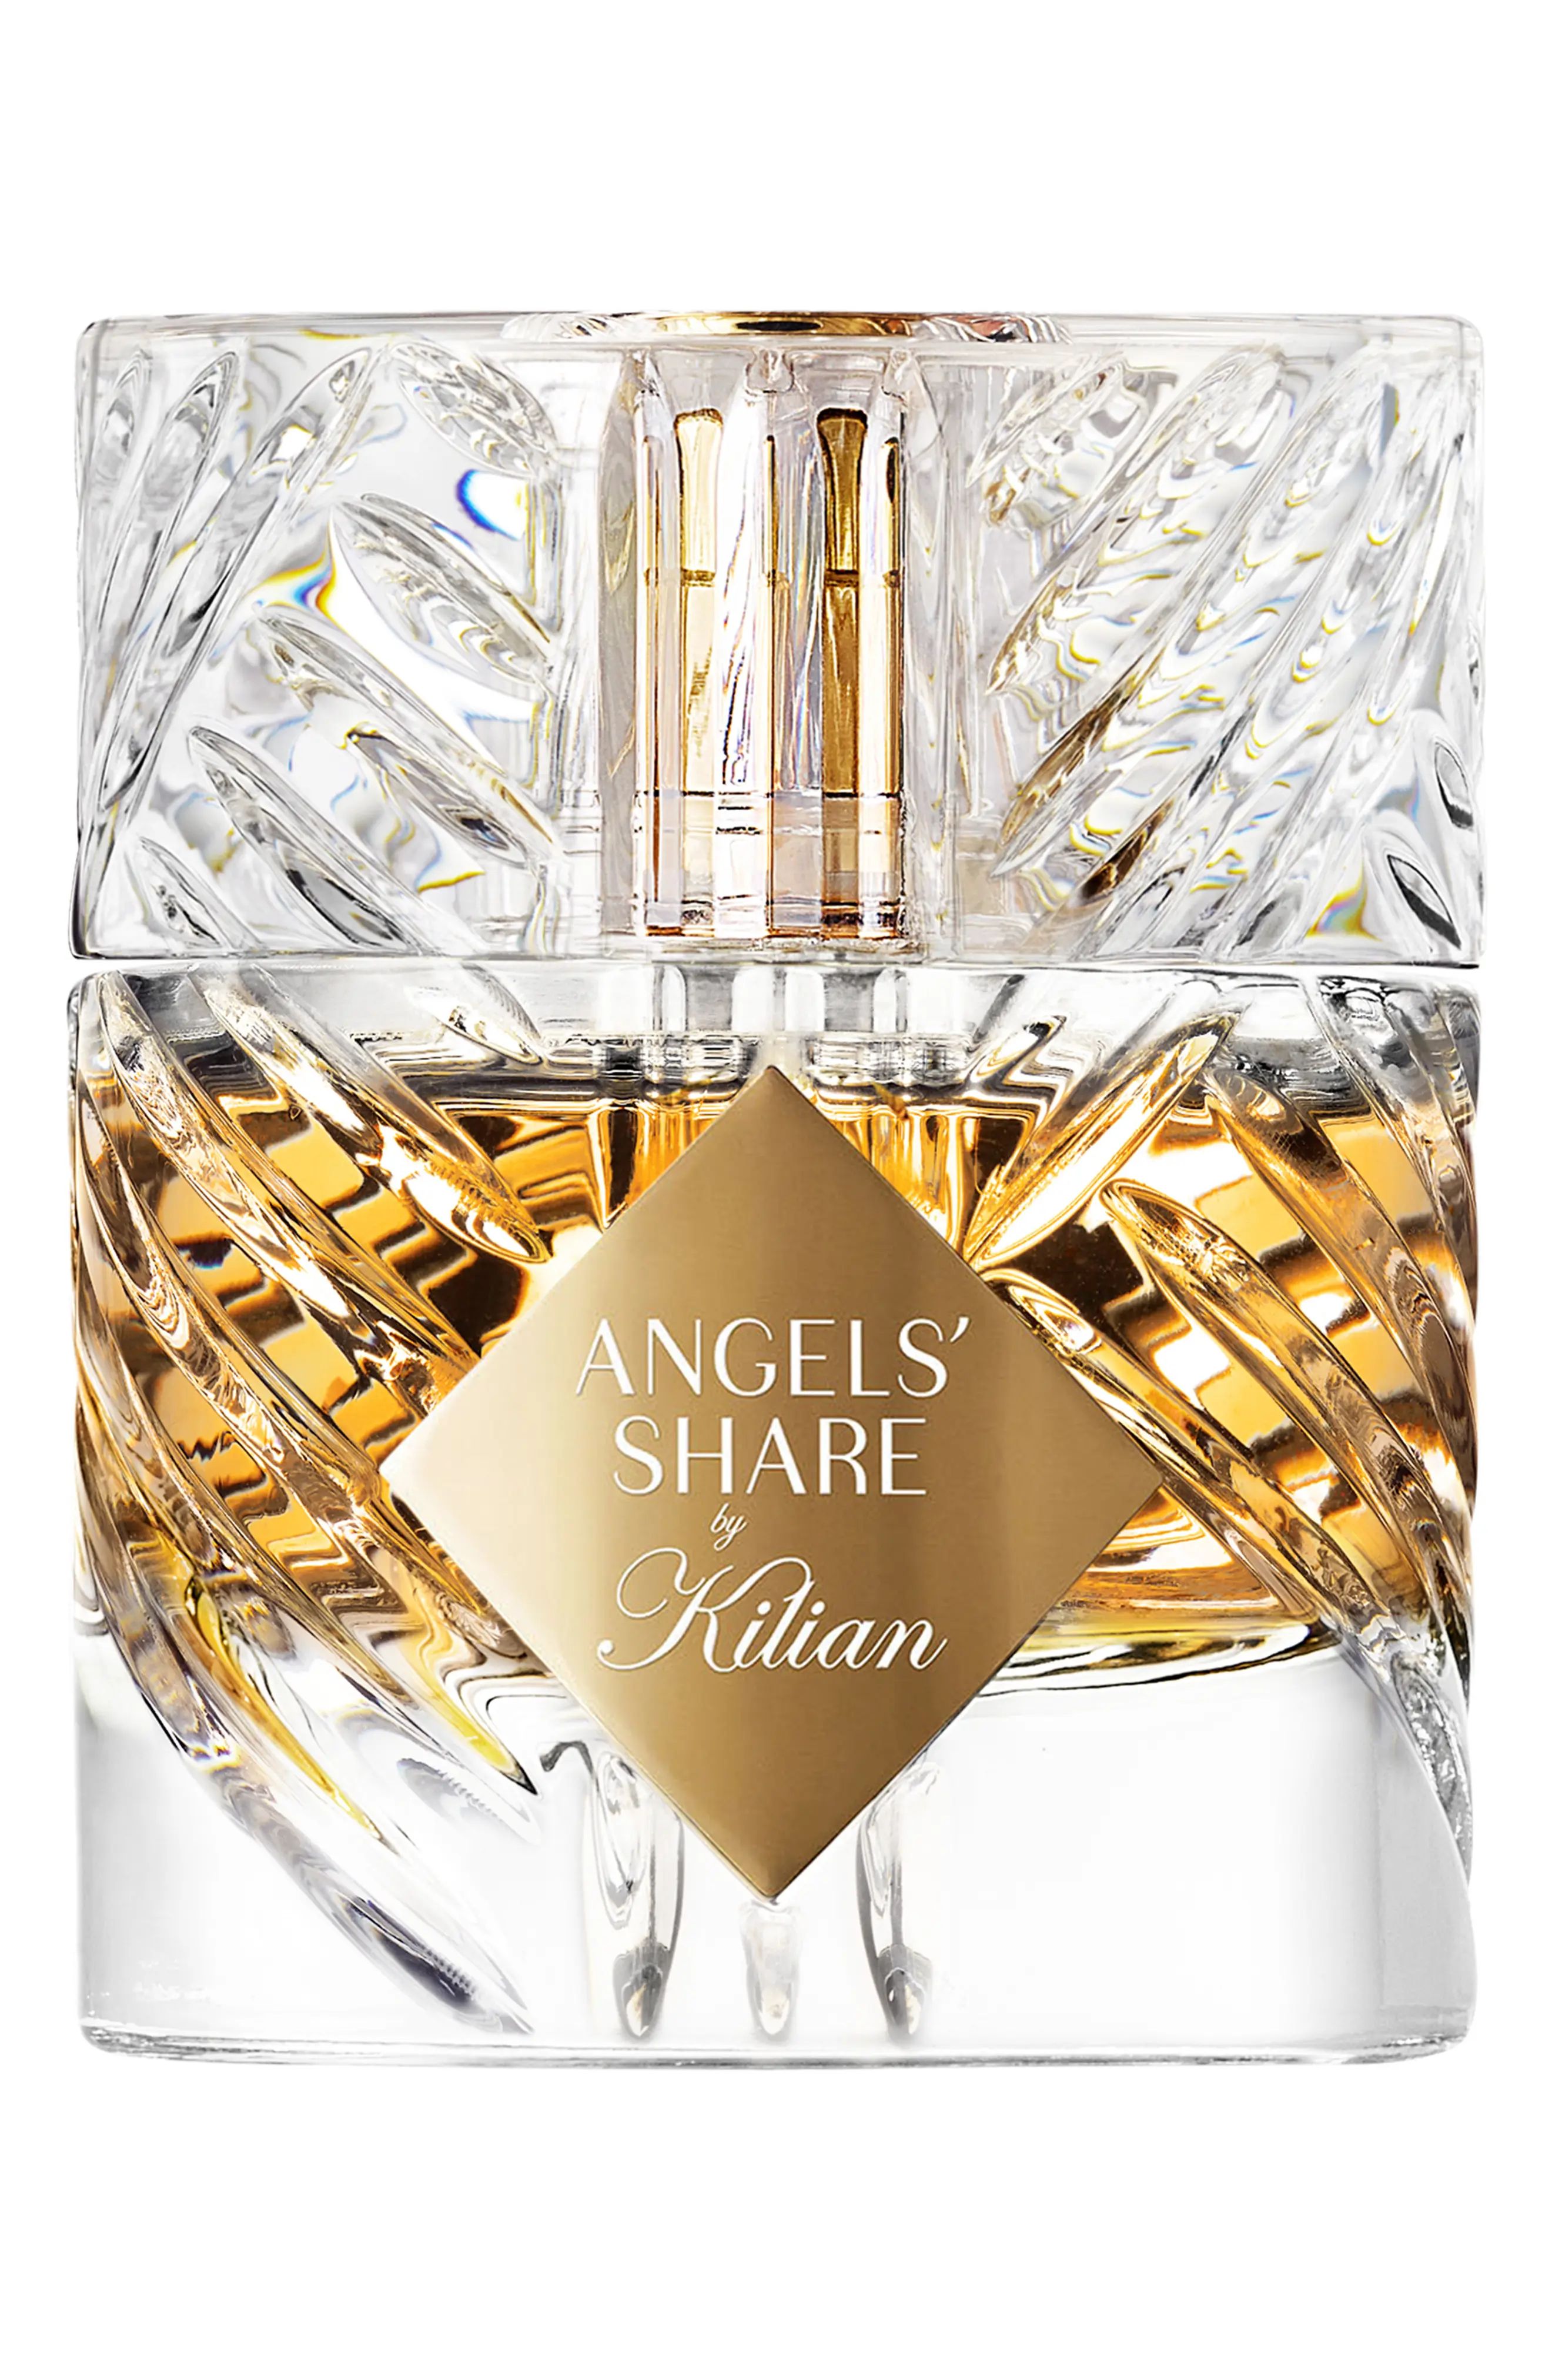 Kilian Paris Angels' Share Fragrance at Nordstrom | Nordstrom